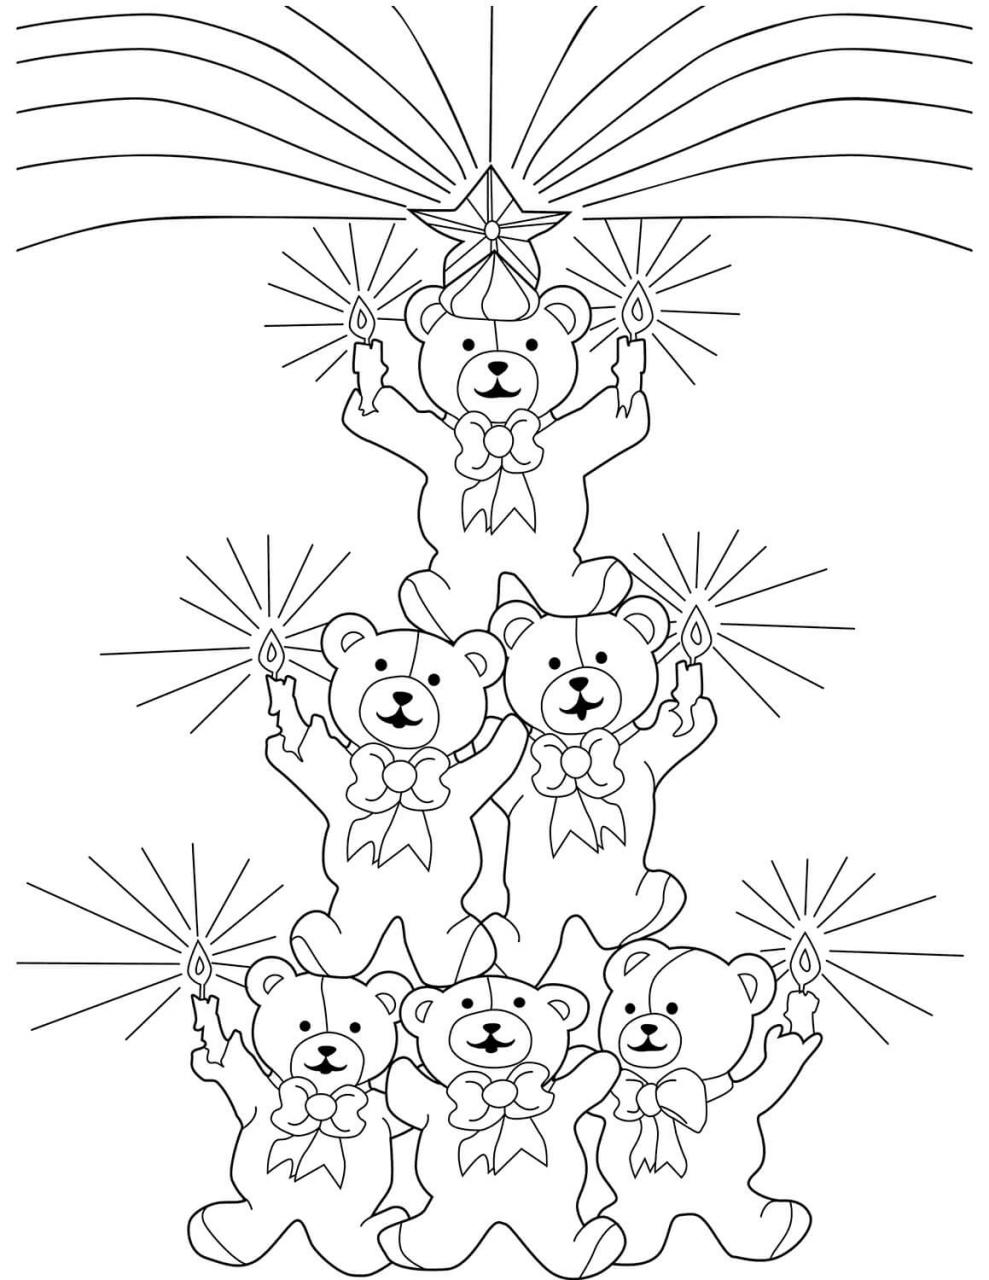 Tổng Hợp Tranh Tô Màu Gấu Teddy (Teddy Bear) Đẹp Nhất Dành Cho Bé | Truyện  Giáo Dục